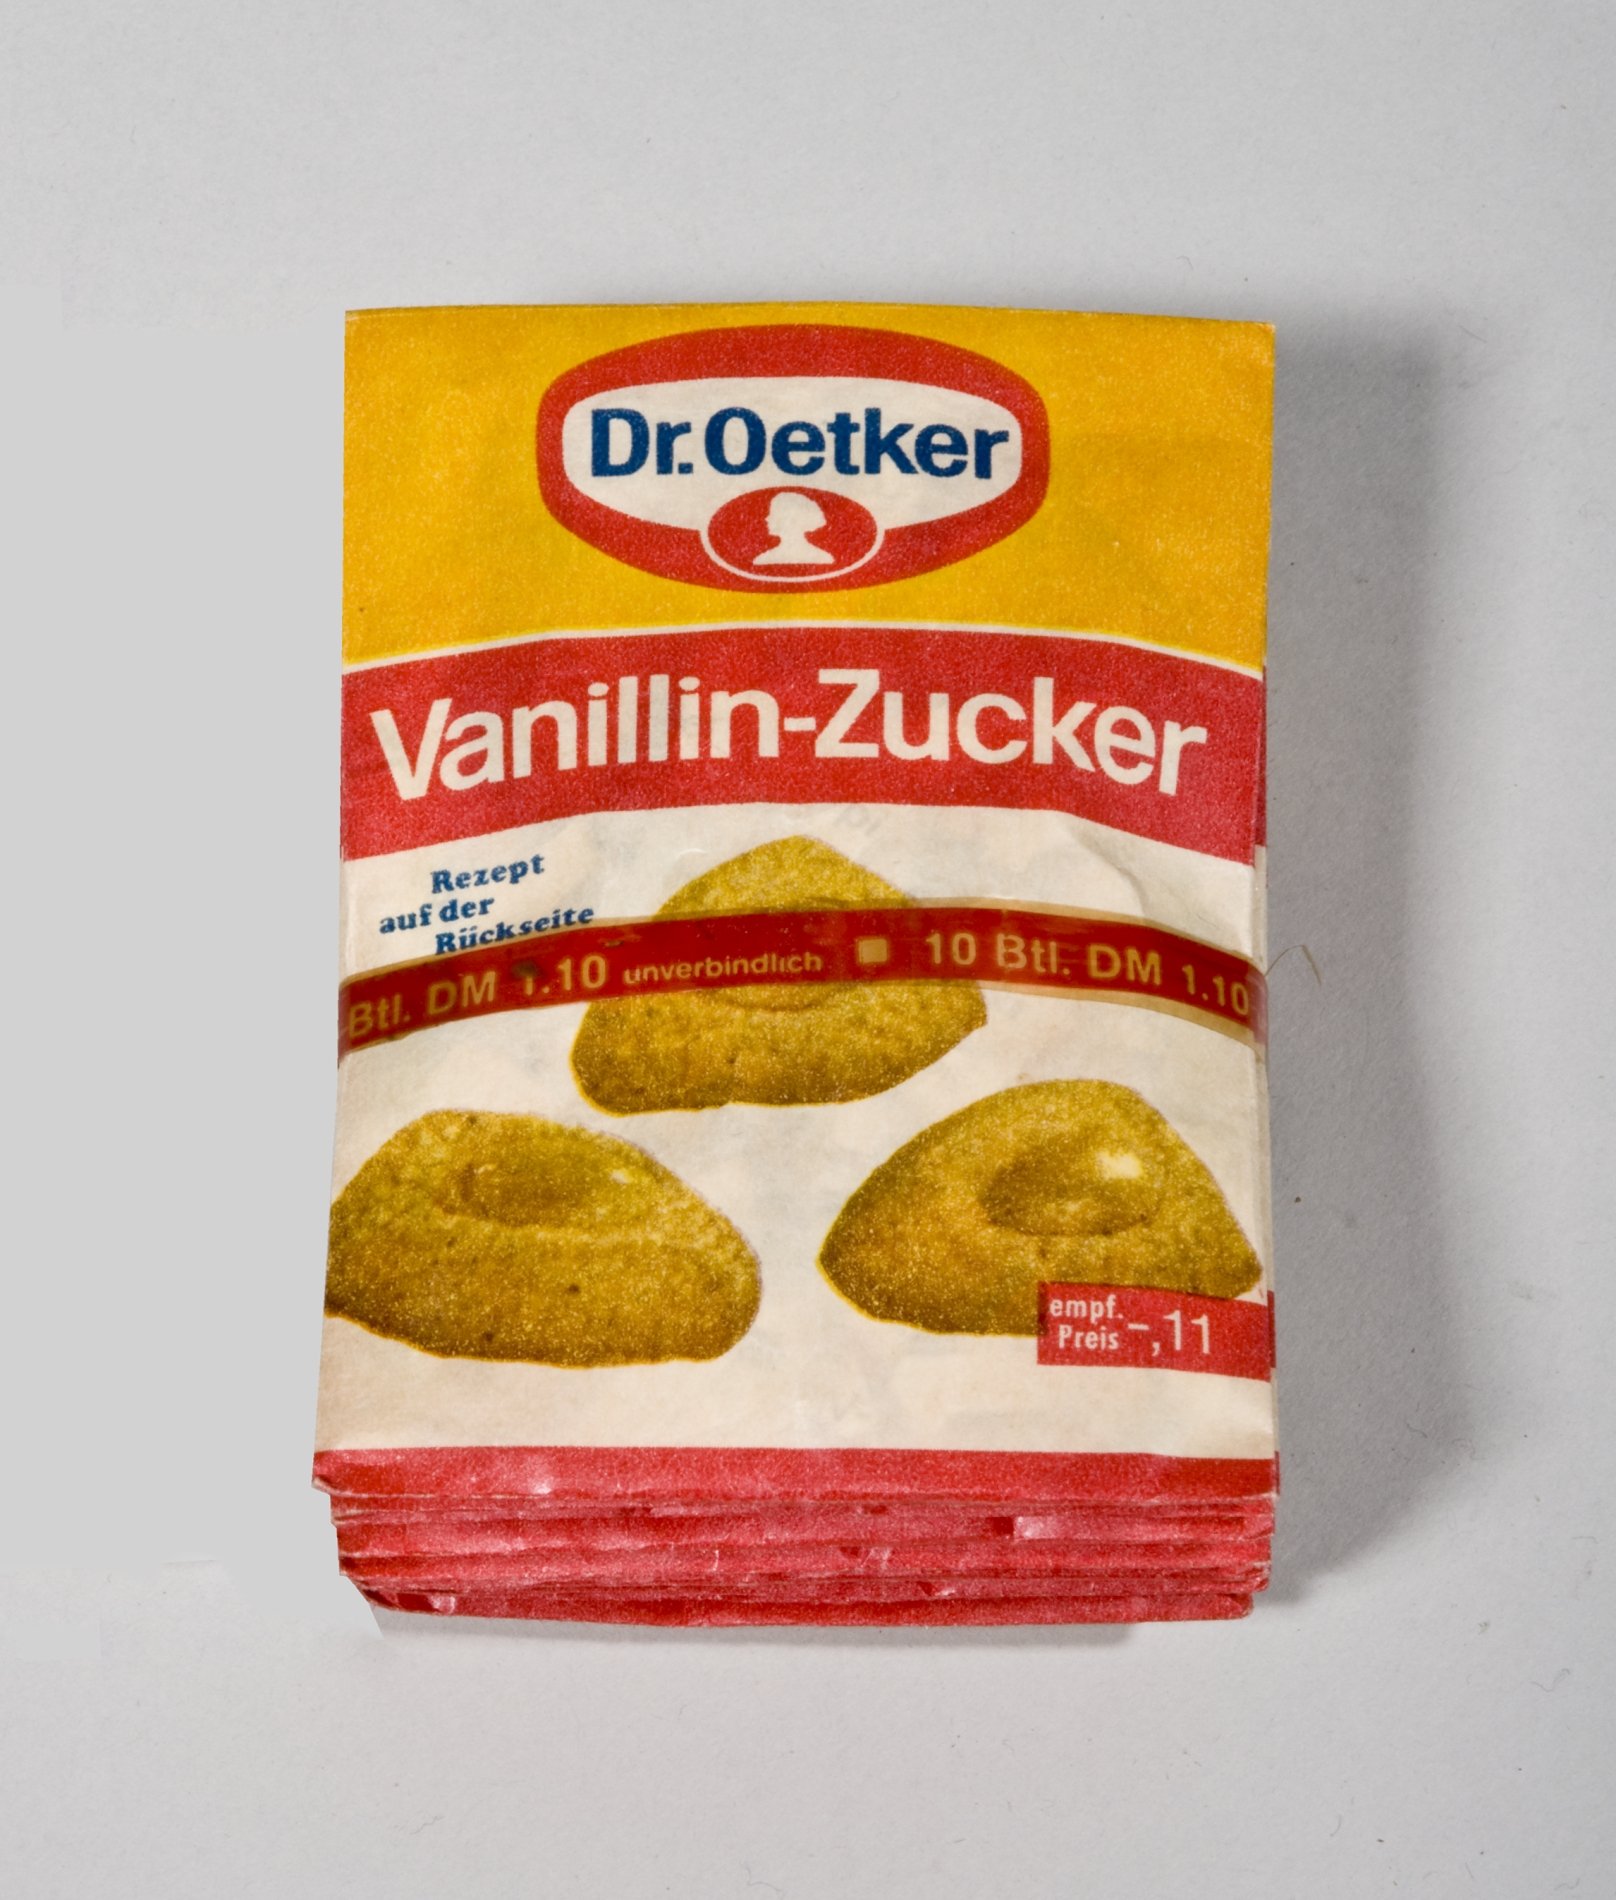 Gebündelte Päckchen "Vanillin-Zucker" von "Dr.Oetker" (Stiftung Domäne Dahlem - Landgut und Museum, Weiternutzung nur mit Genehmigung des Museums CC BY-NC-SA)